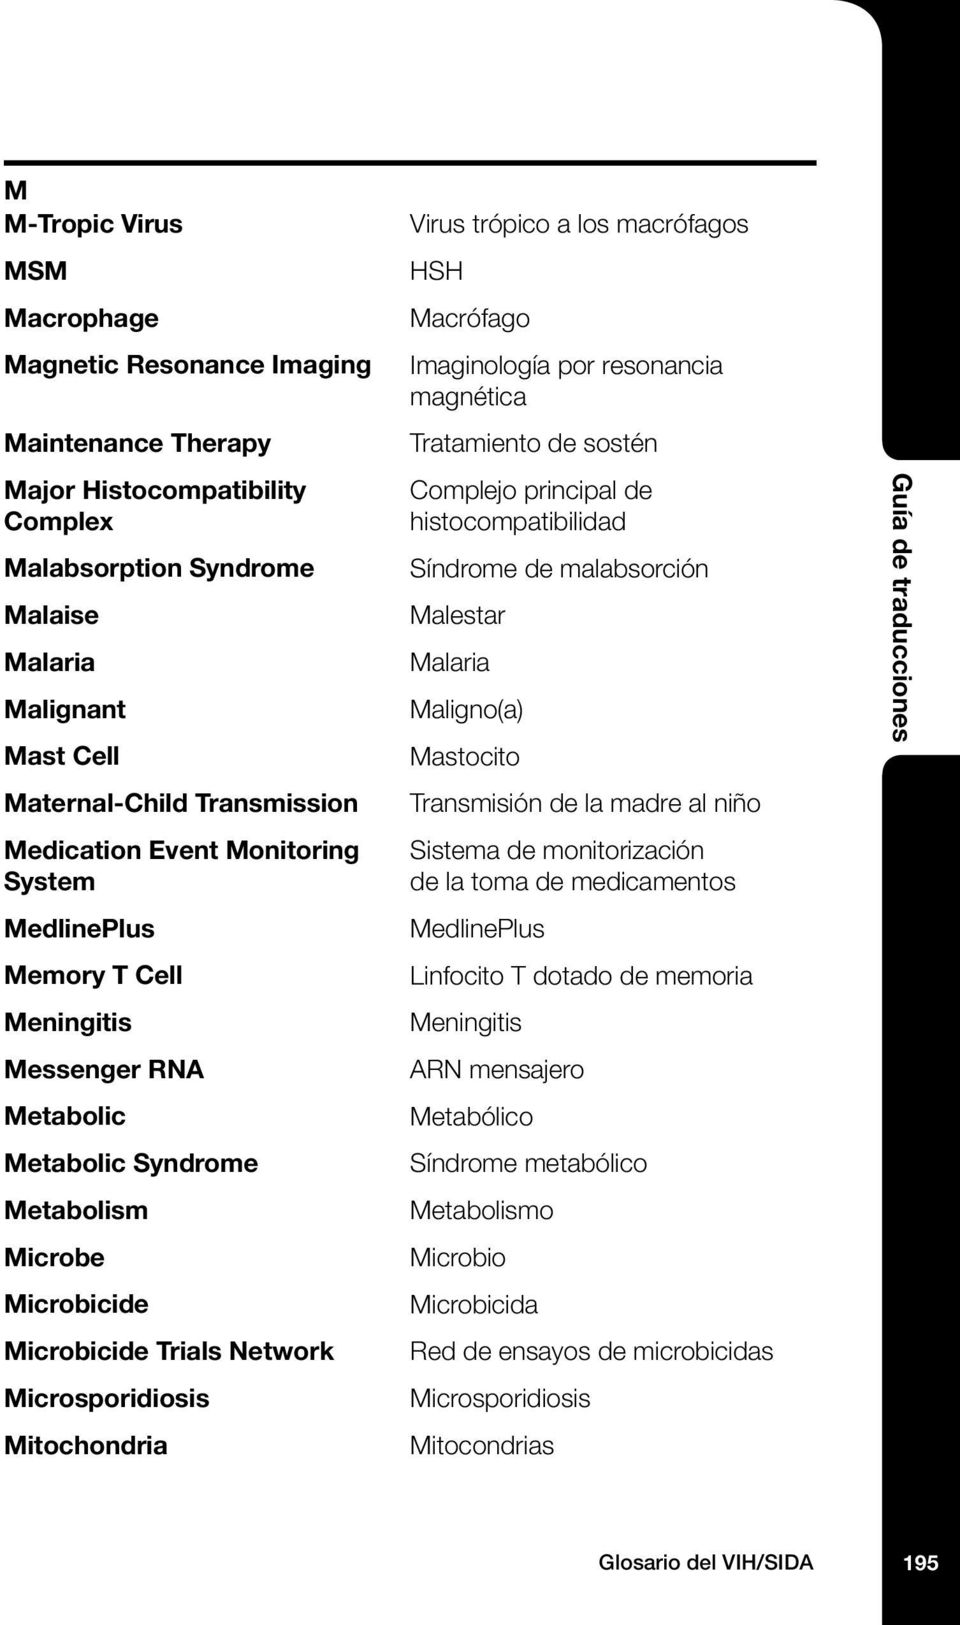 Mitochondria Virus trópico a los macrófagos HSH Macrófago Imaginología por resonancia magnética Tratamiento de sostén Complejo principal de histocompatibilidad Síndrome de malabsorción Malestar